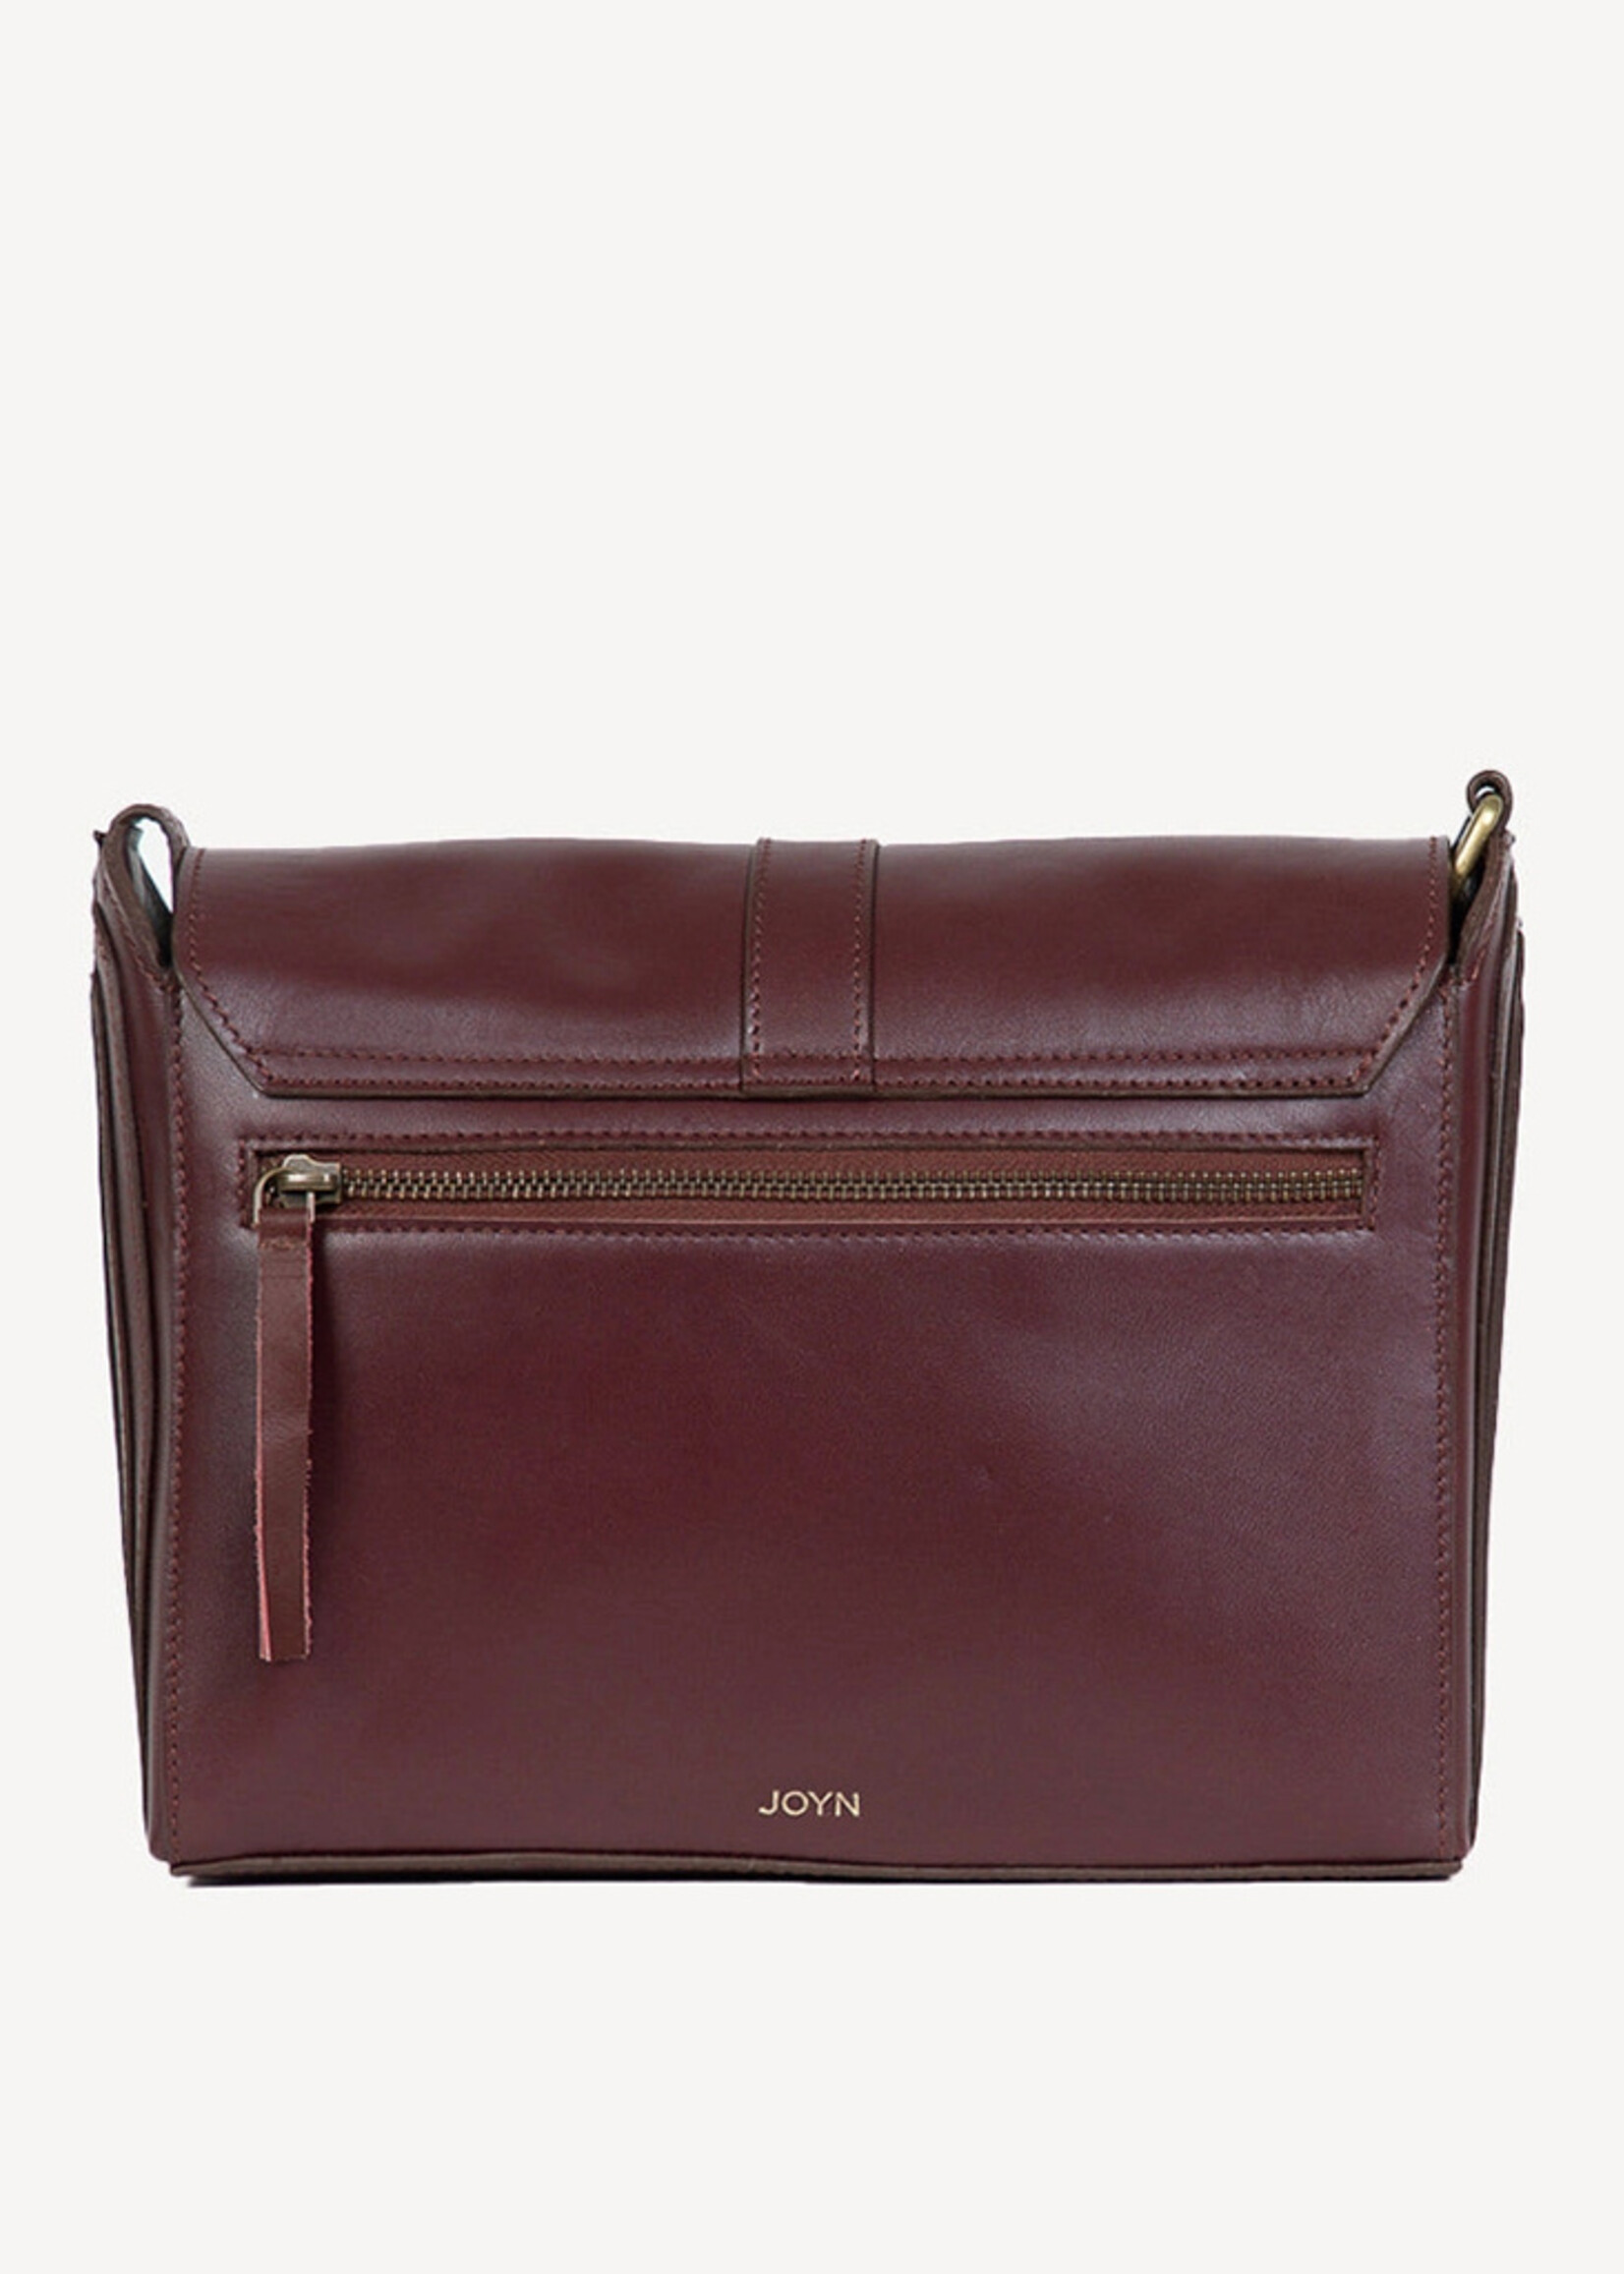 Women's quilted leather crossbody shoulder purse, designer handbag  messenger bag | eBay